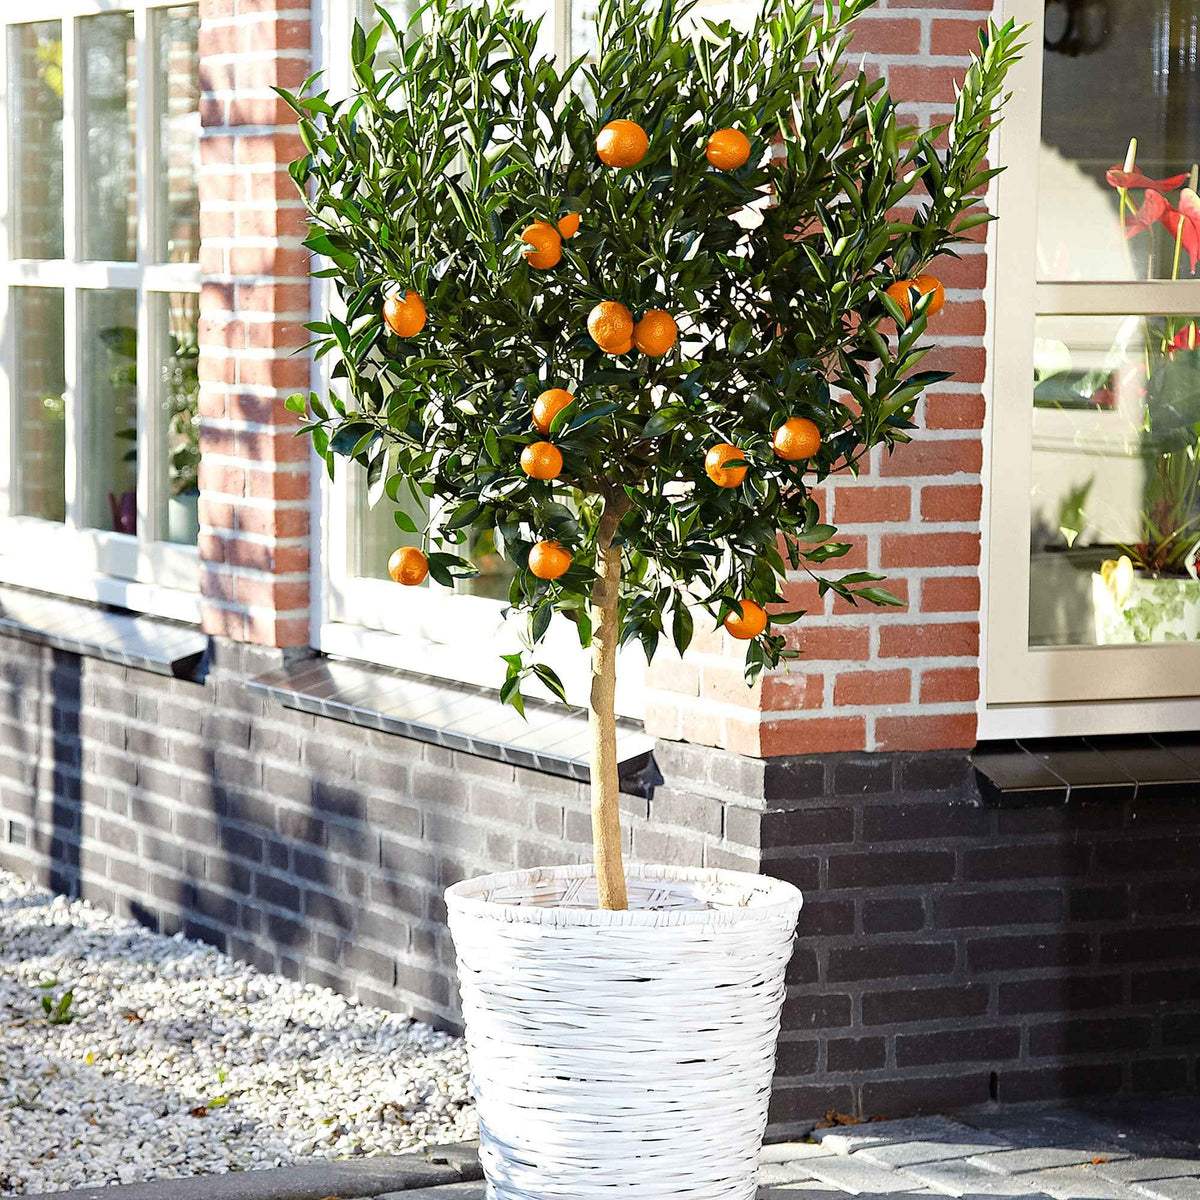 Mandarinier - Citrus reticulata - Plantes